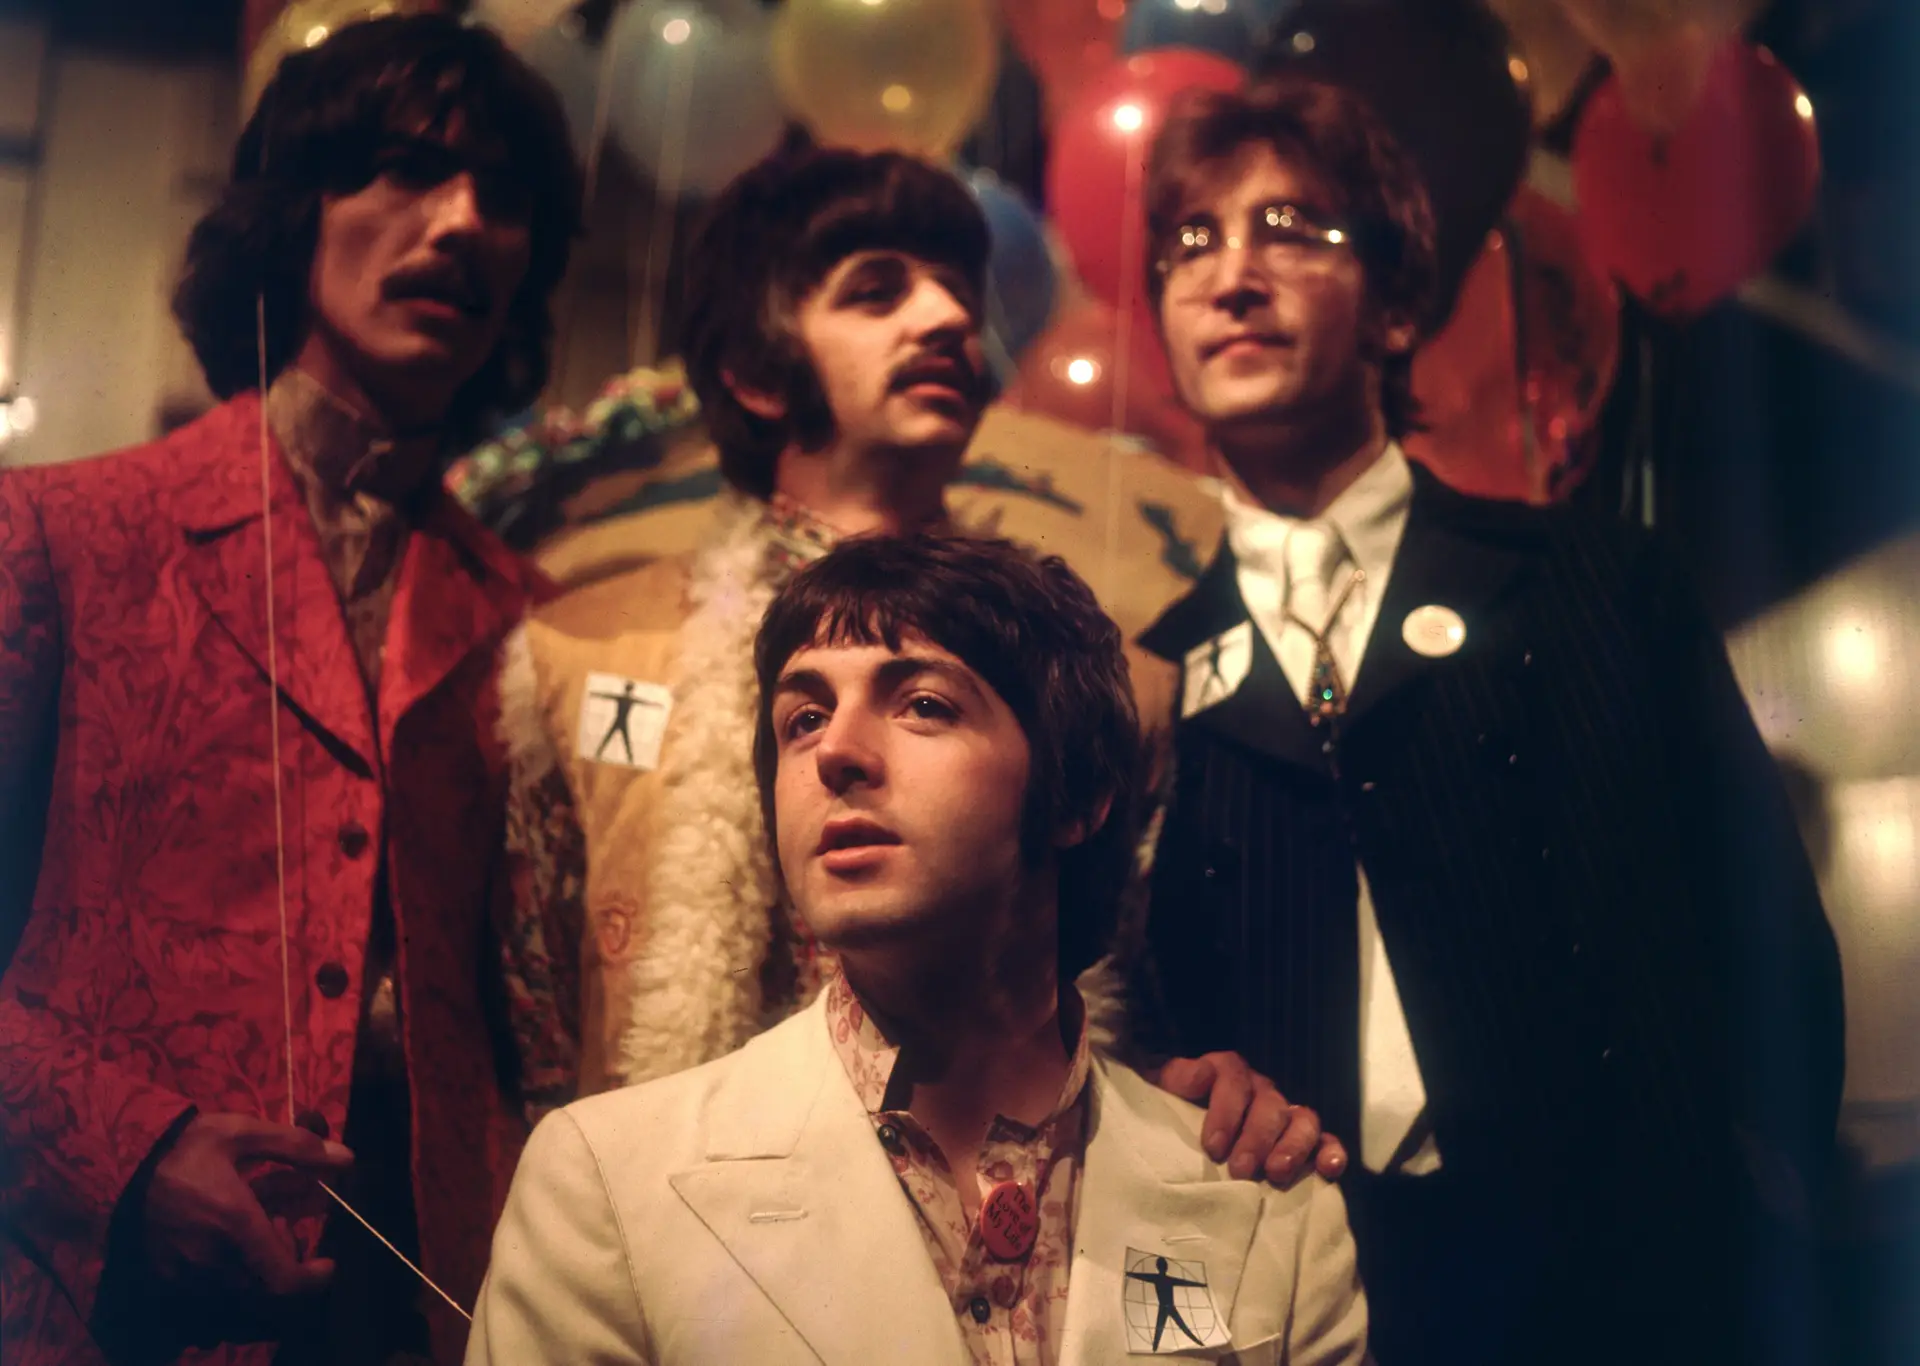 Chegou 'Now and Then', a “última canção dos Beatles”: ouça-a aqui - Expresso